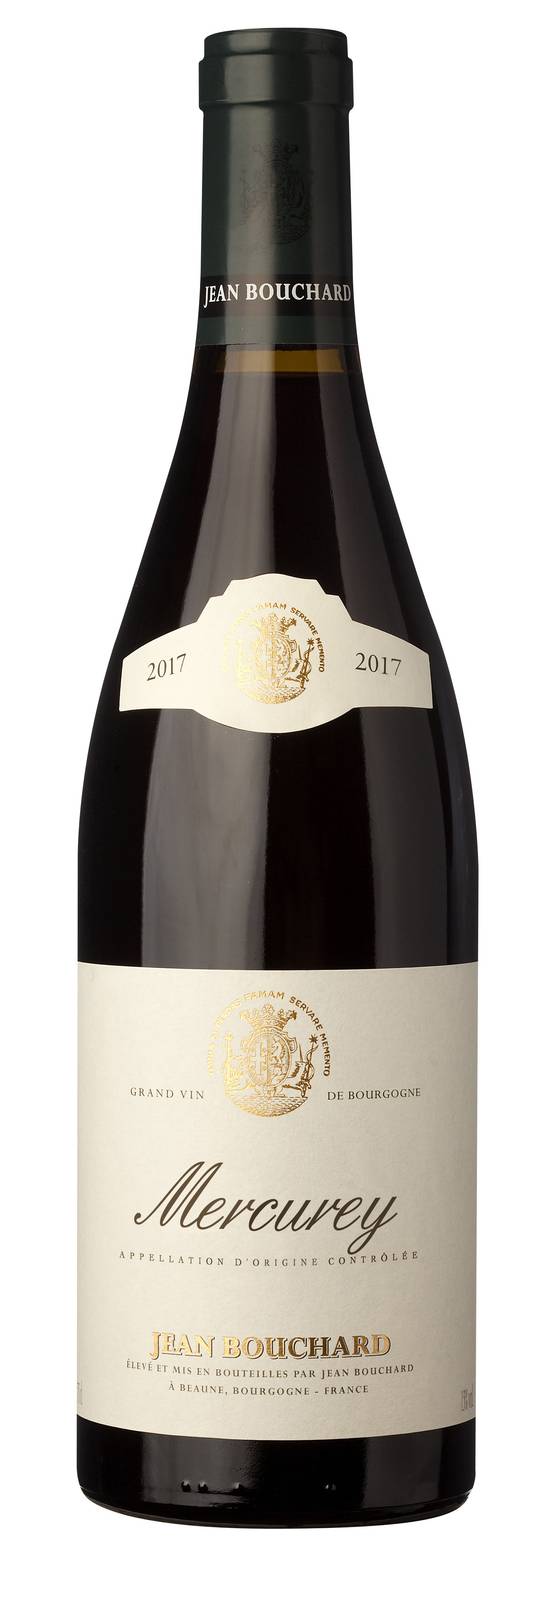 Jean Bouchard - Mercurey vin rouge domestique 2017 (750ml)